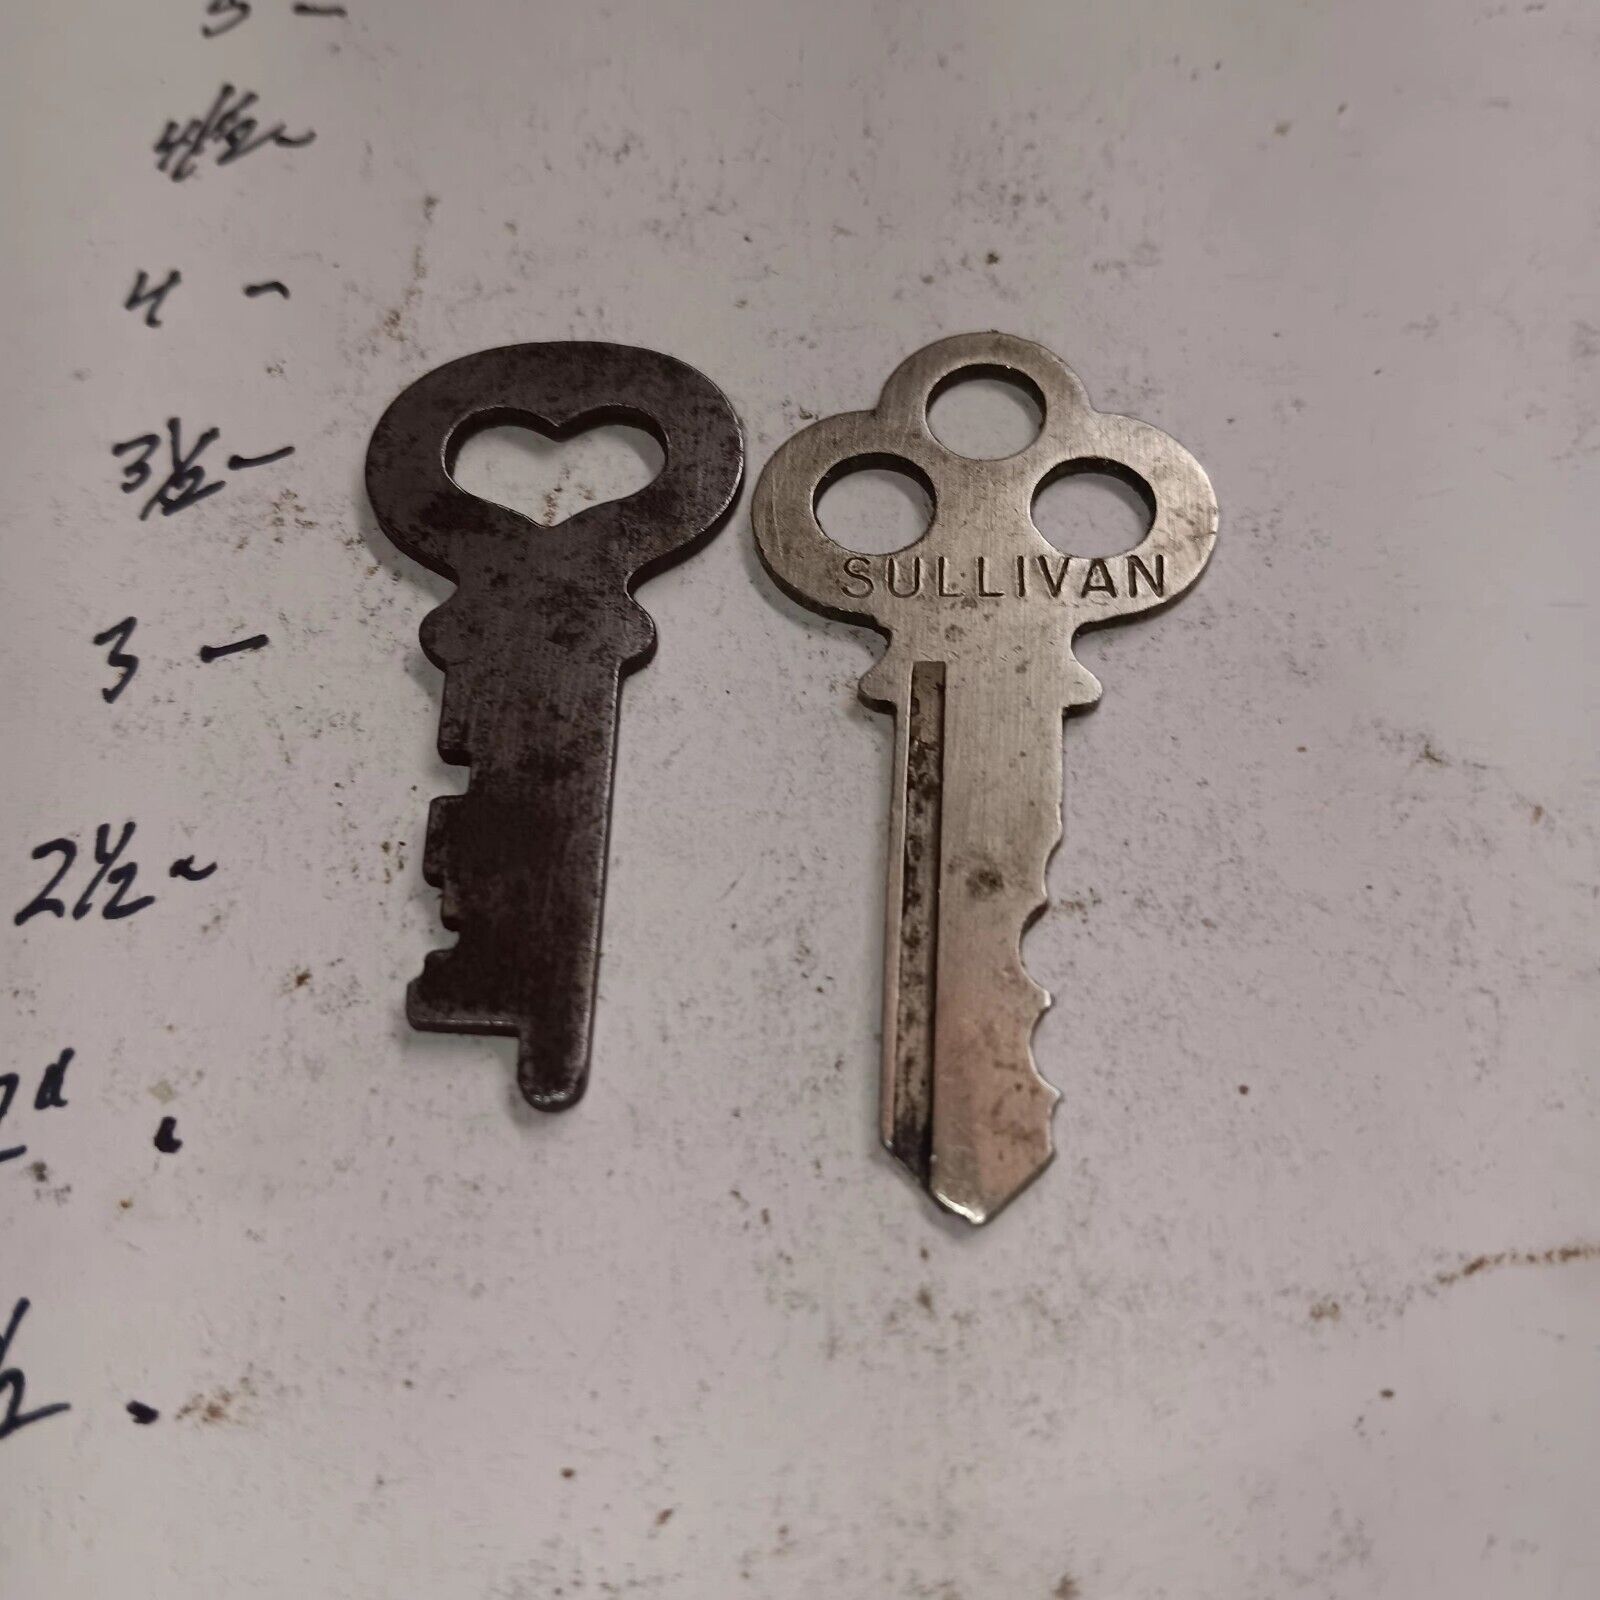 2 Vintage Flat Keys